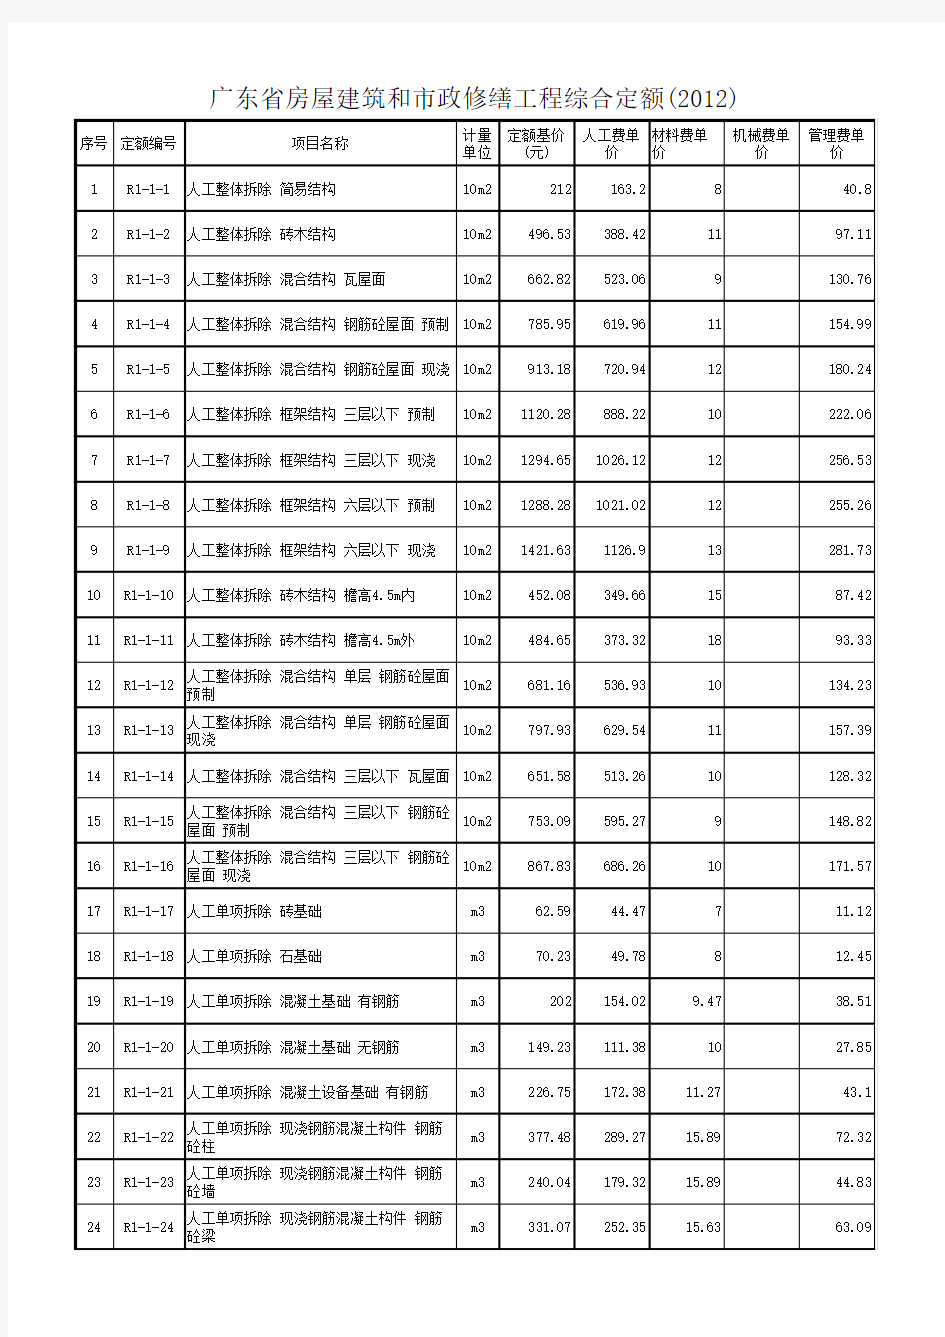 广东省房屋建筑和市政修缮工程综合定额(2012)